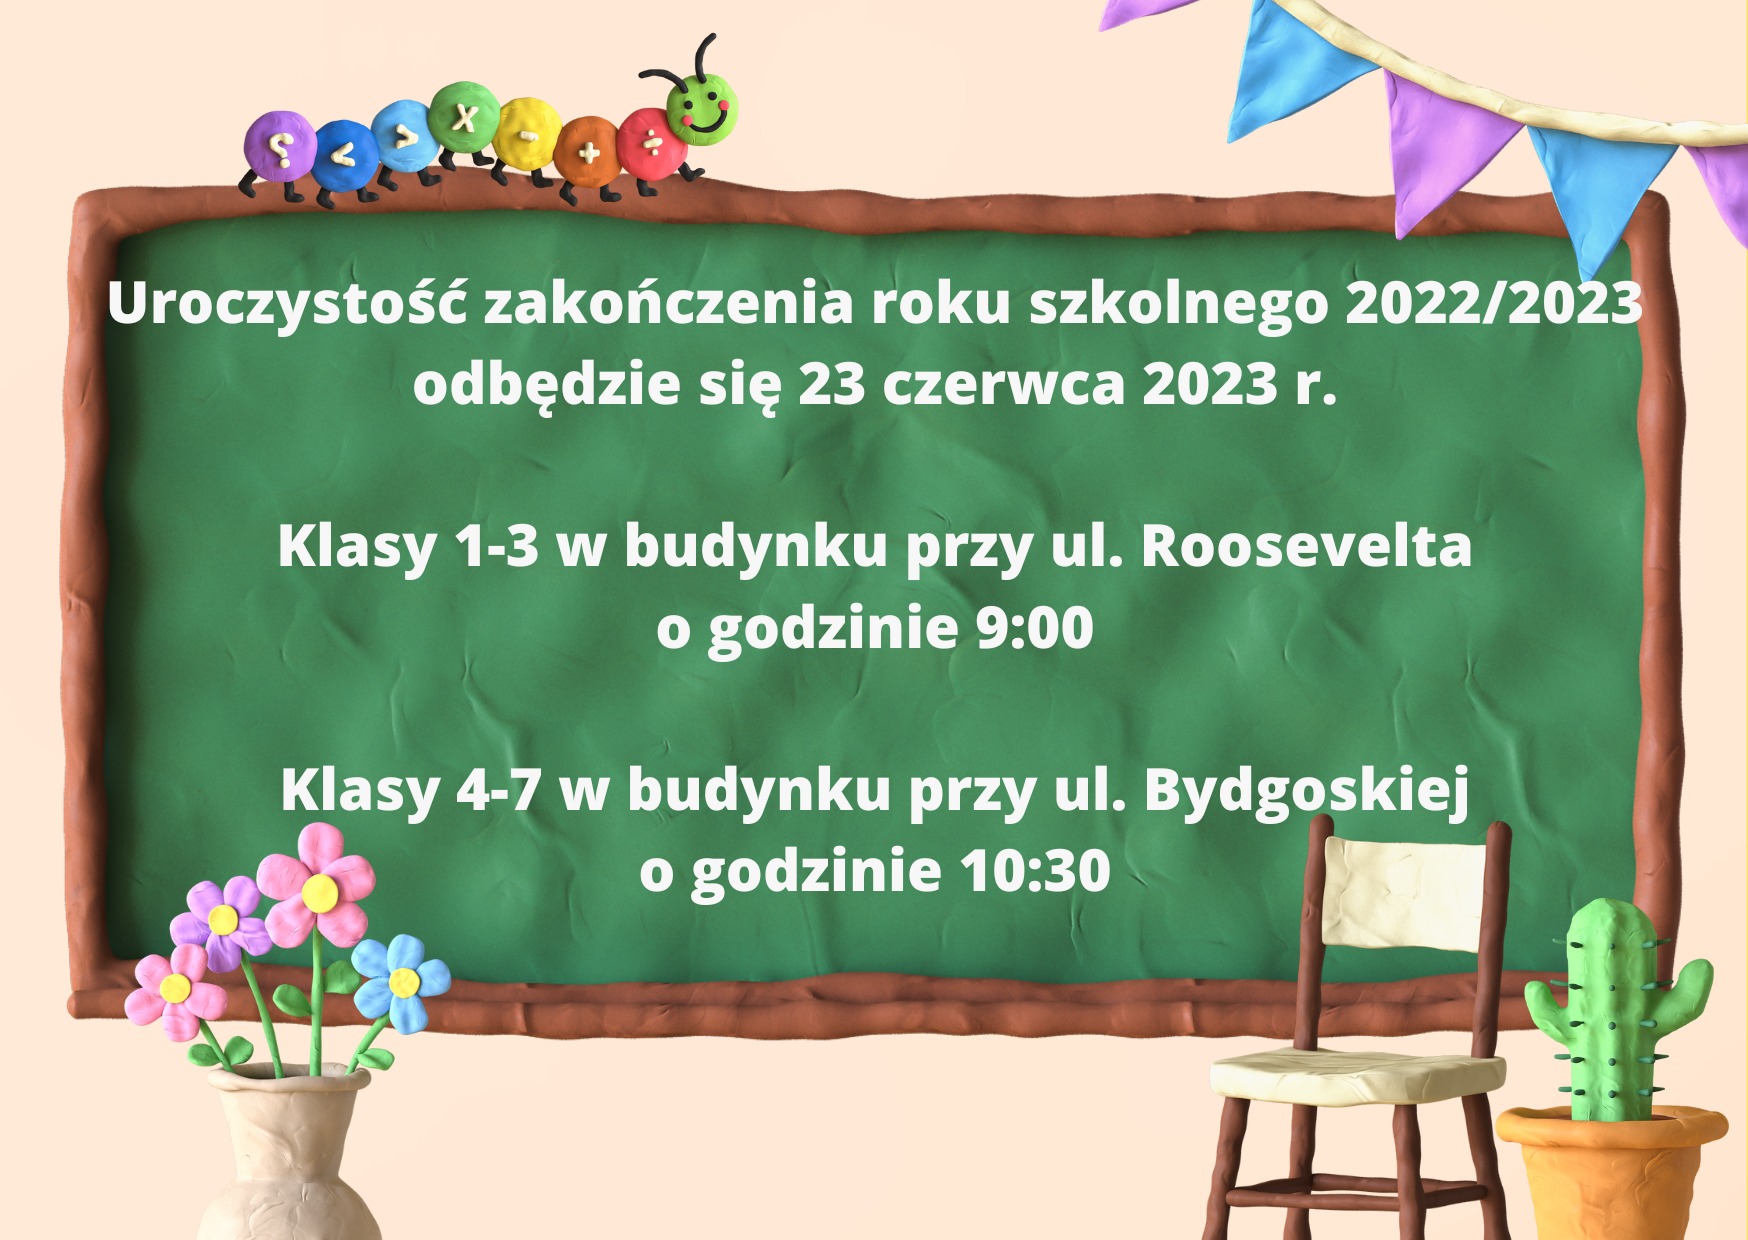 Informacja o zakończeniu roku szkolnego 2022/2023